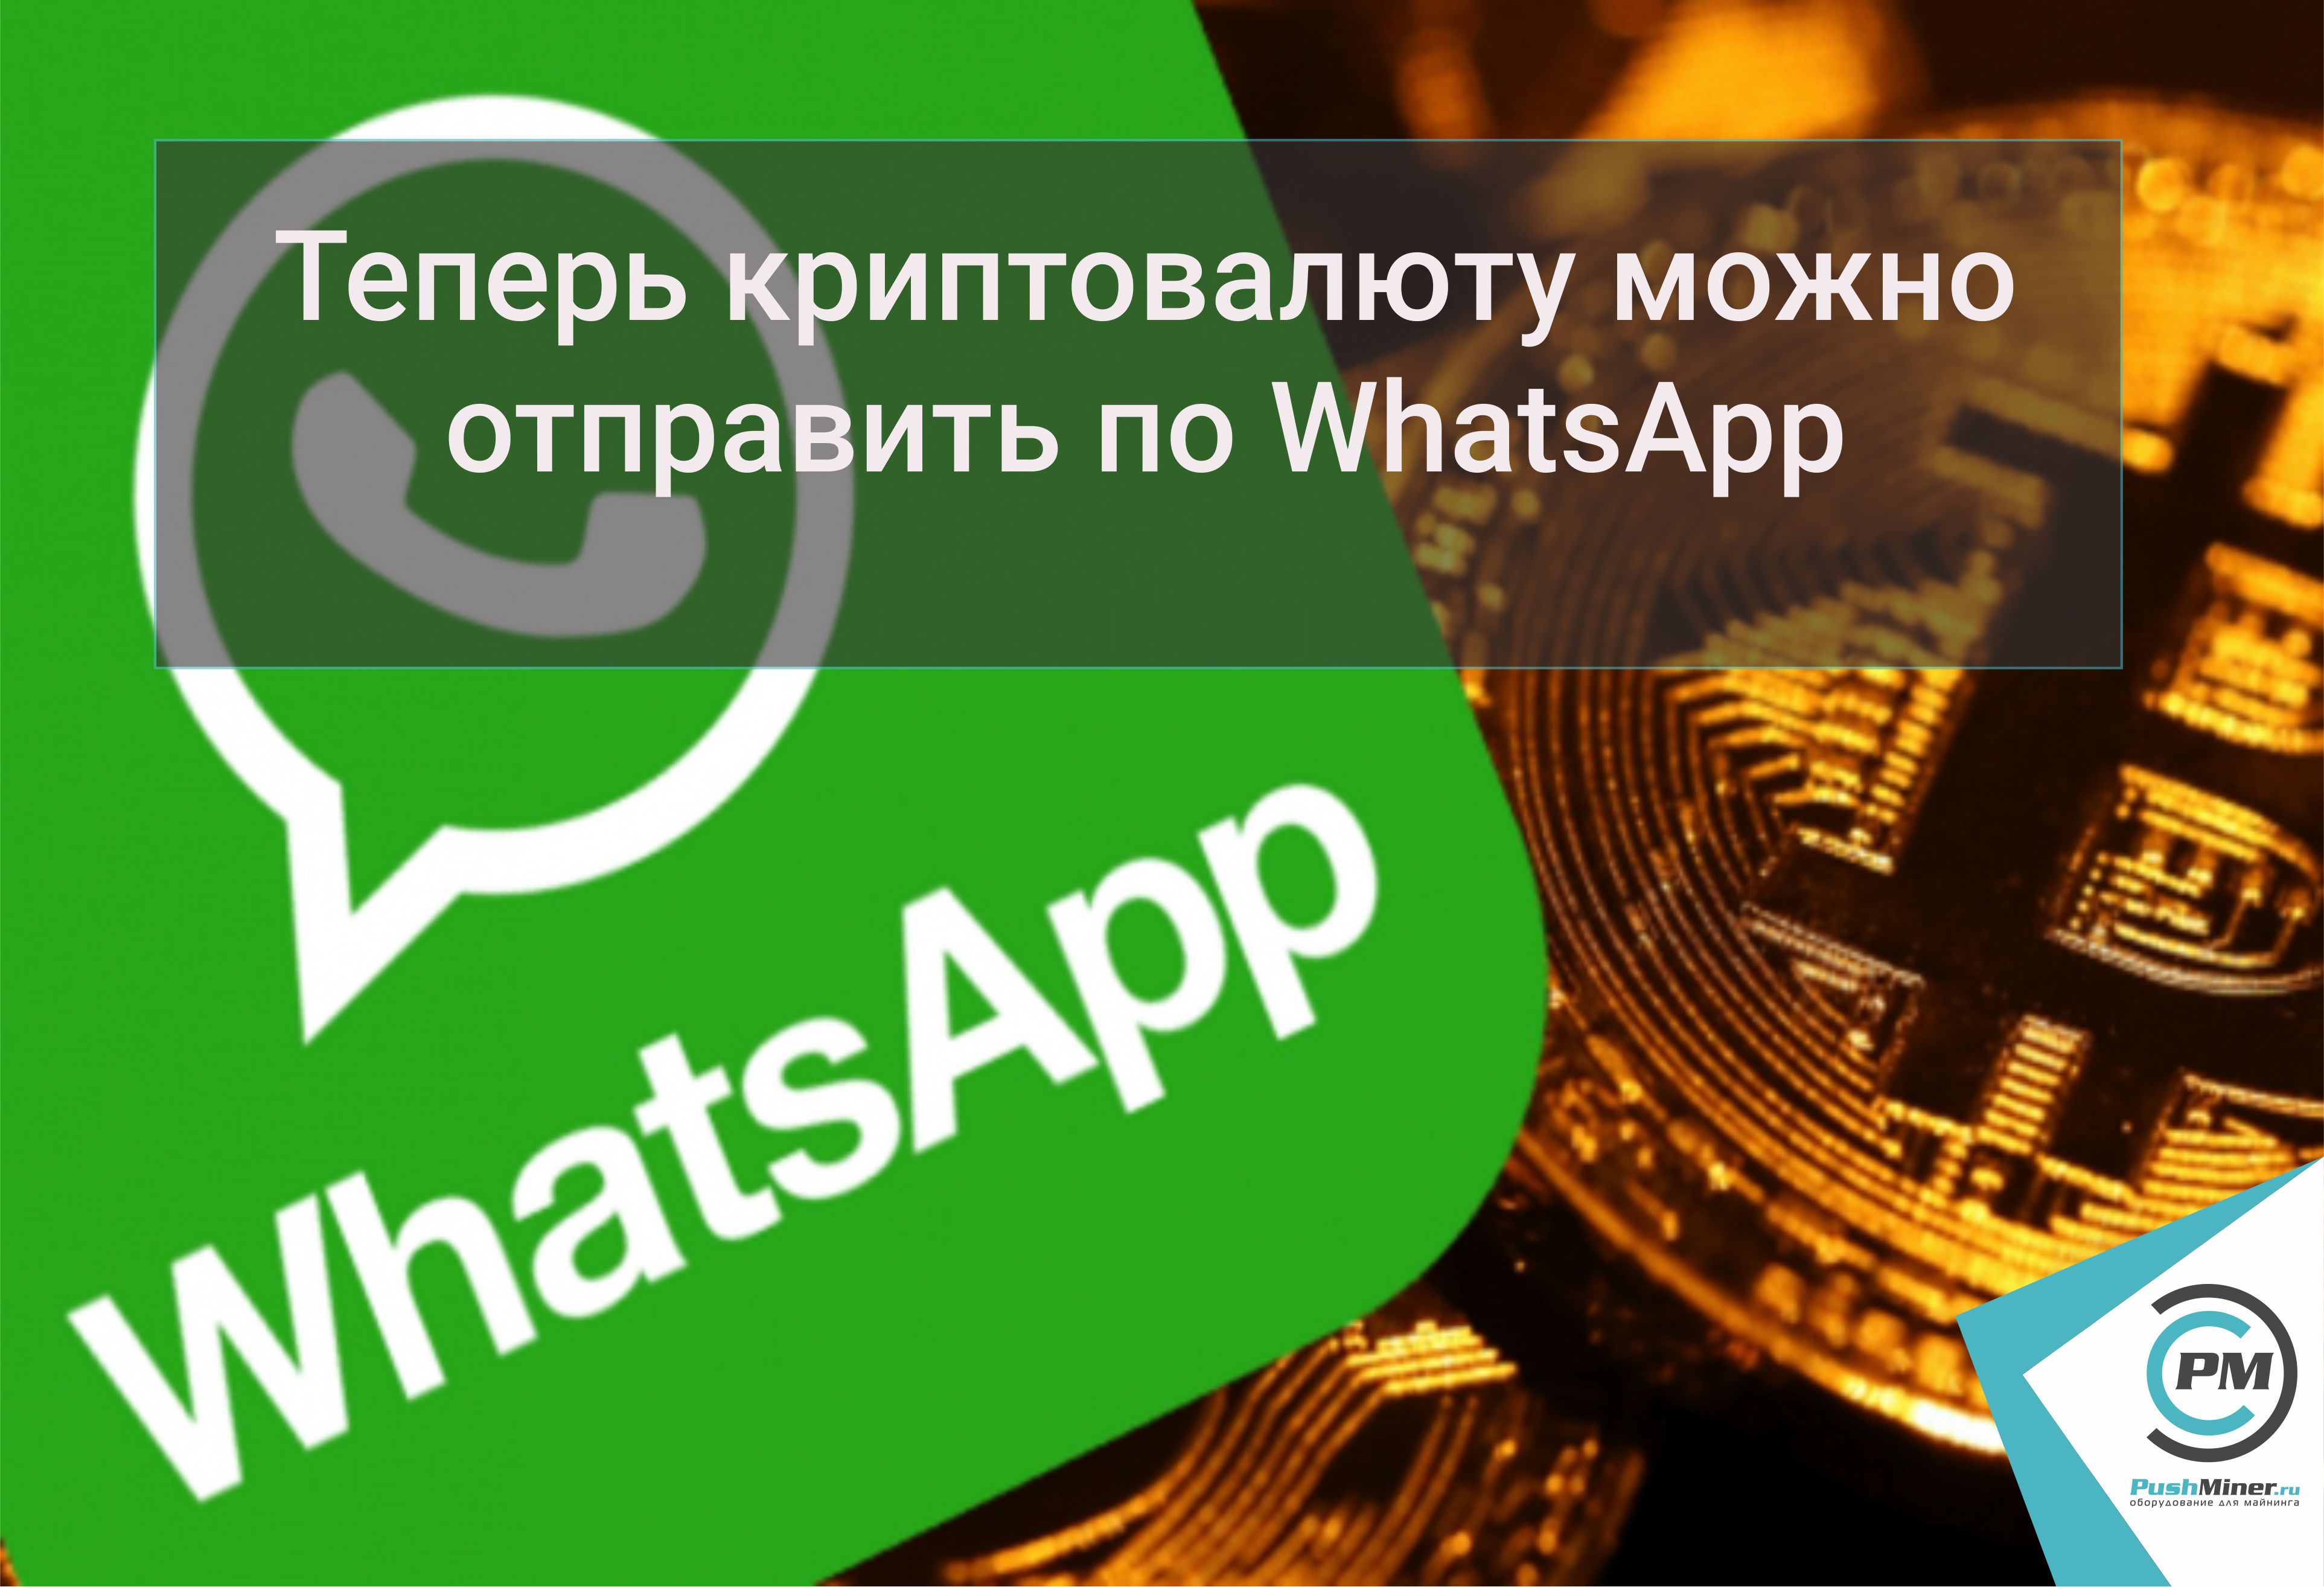 Теперь криптовалюту можно отправить по WhatsApp